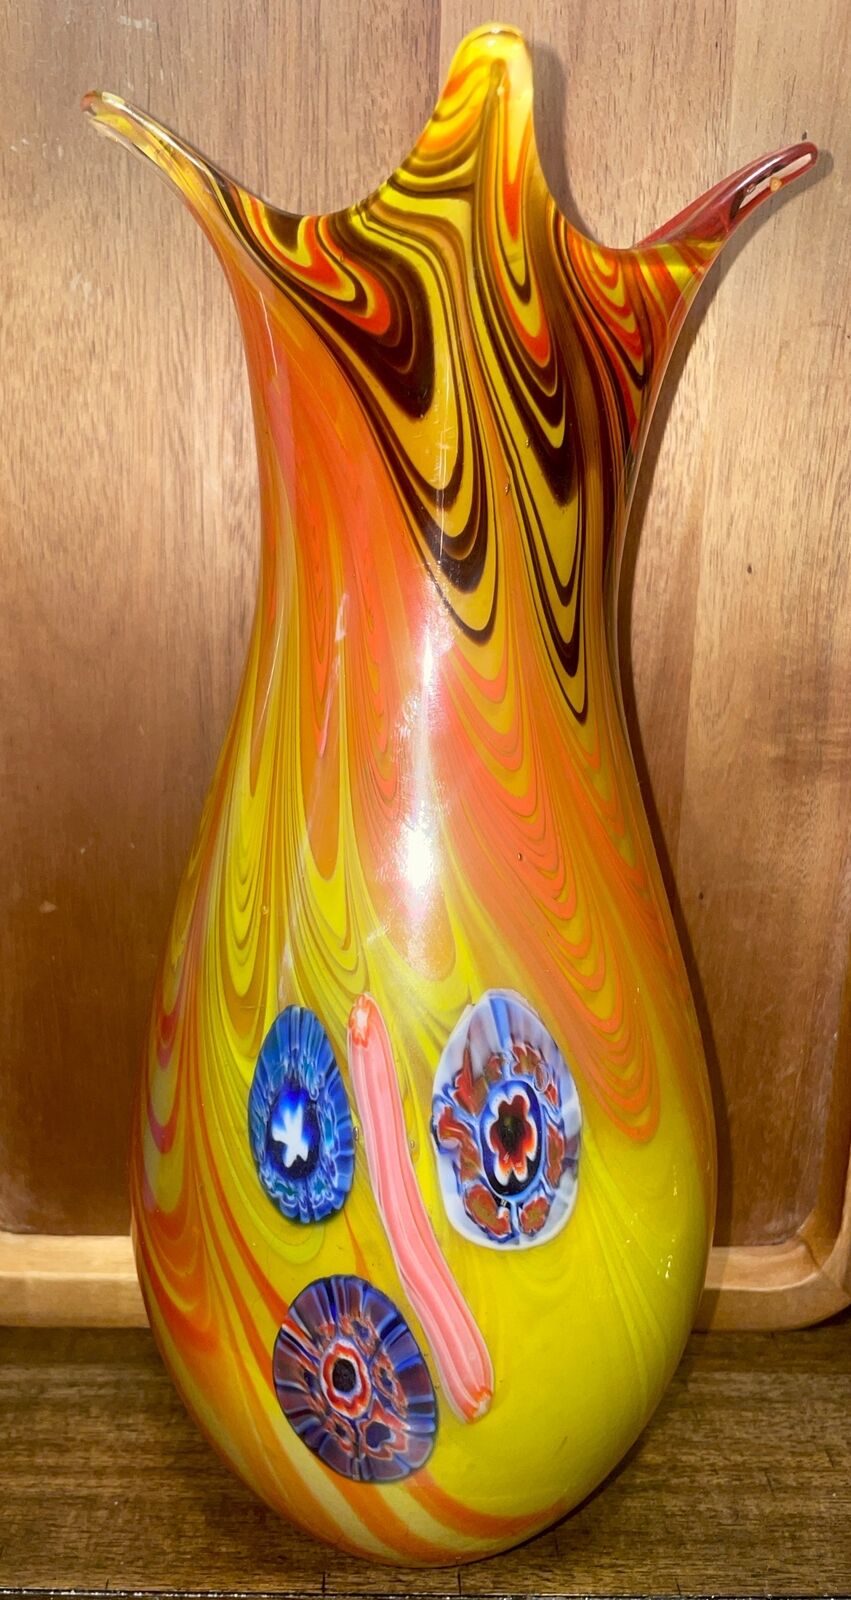 Modernist Italian Murano Millefiori Orb Vase by Fratelli Toso 1950s Rare 12”